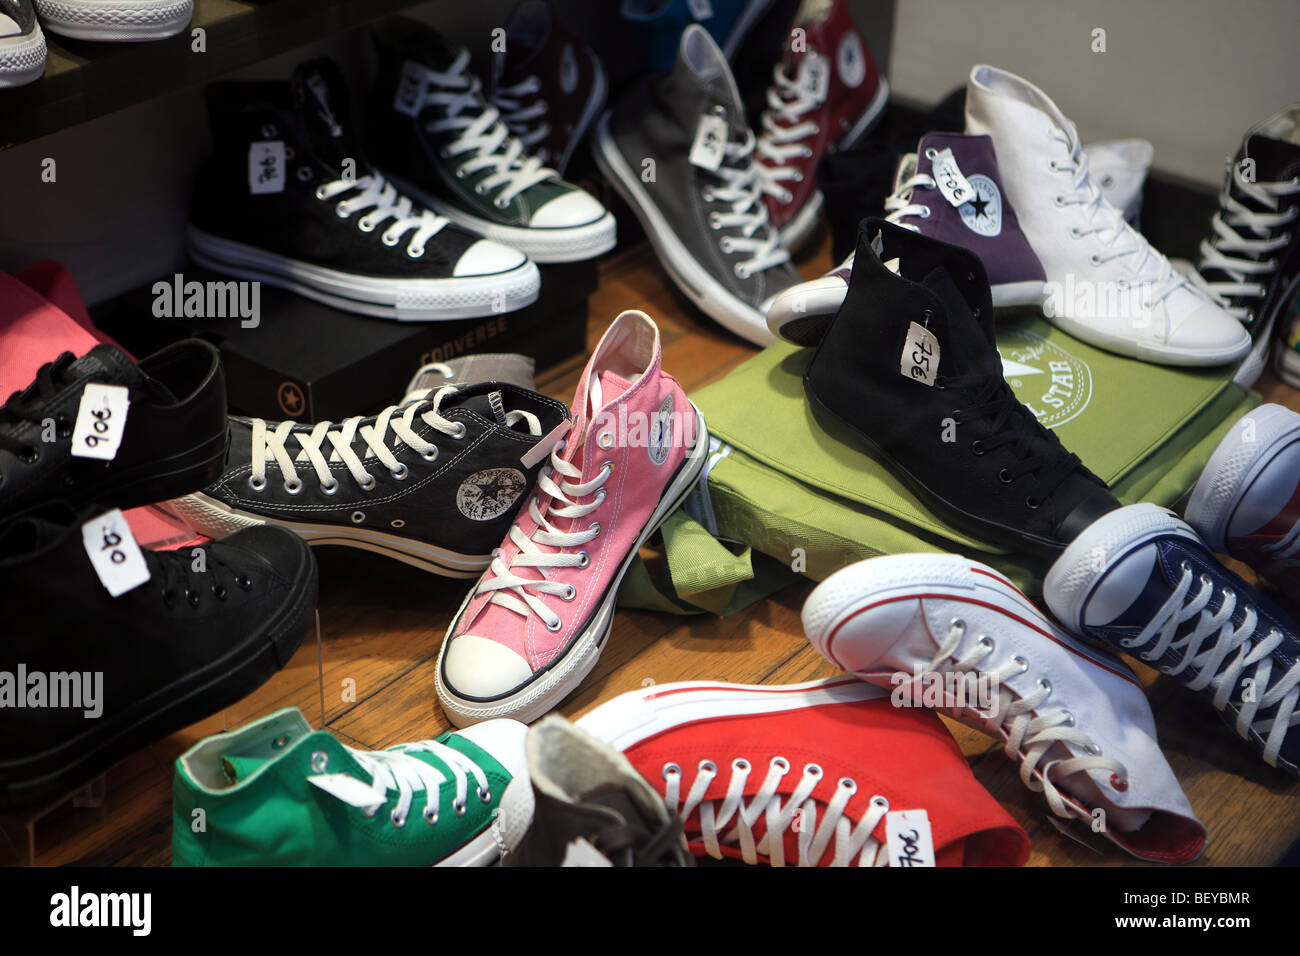 Bunte Anzeige von Converse Schuhe auf Verkauf in einem Schaufenster  Stockfotografie - Alamy